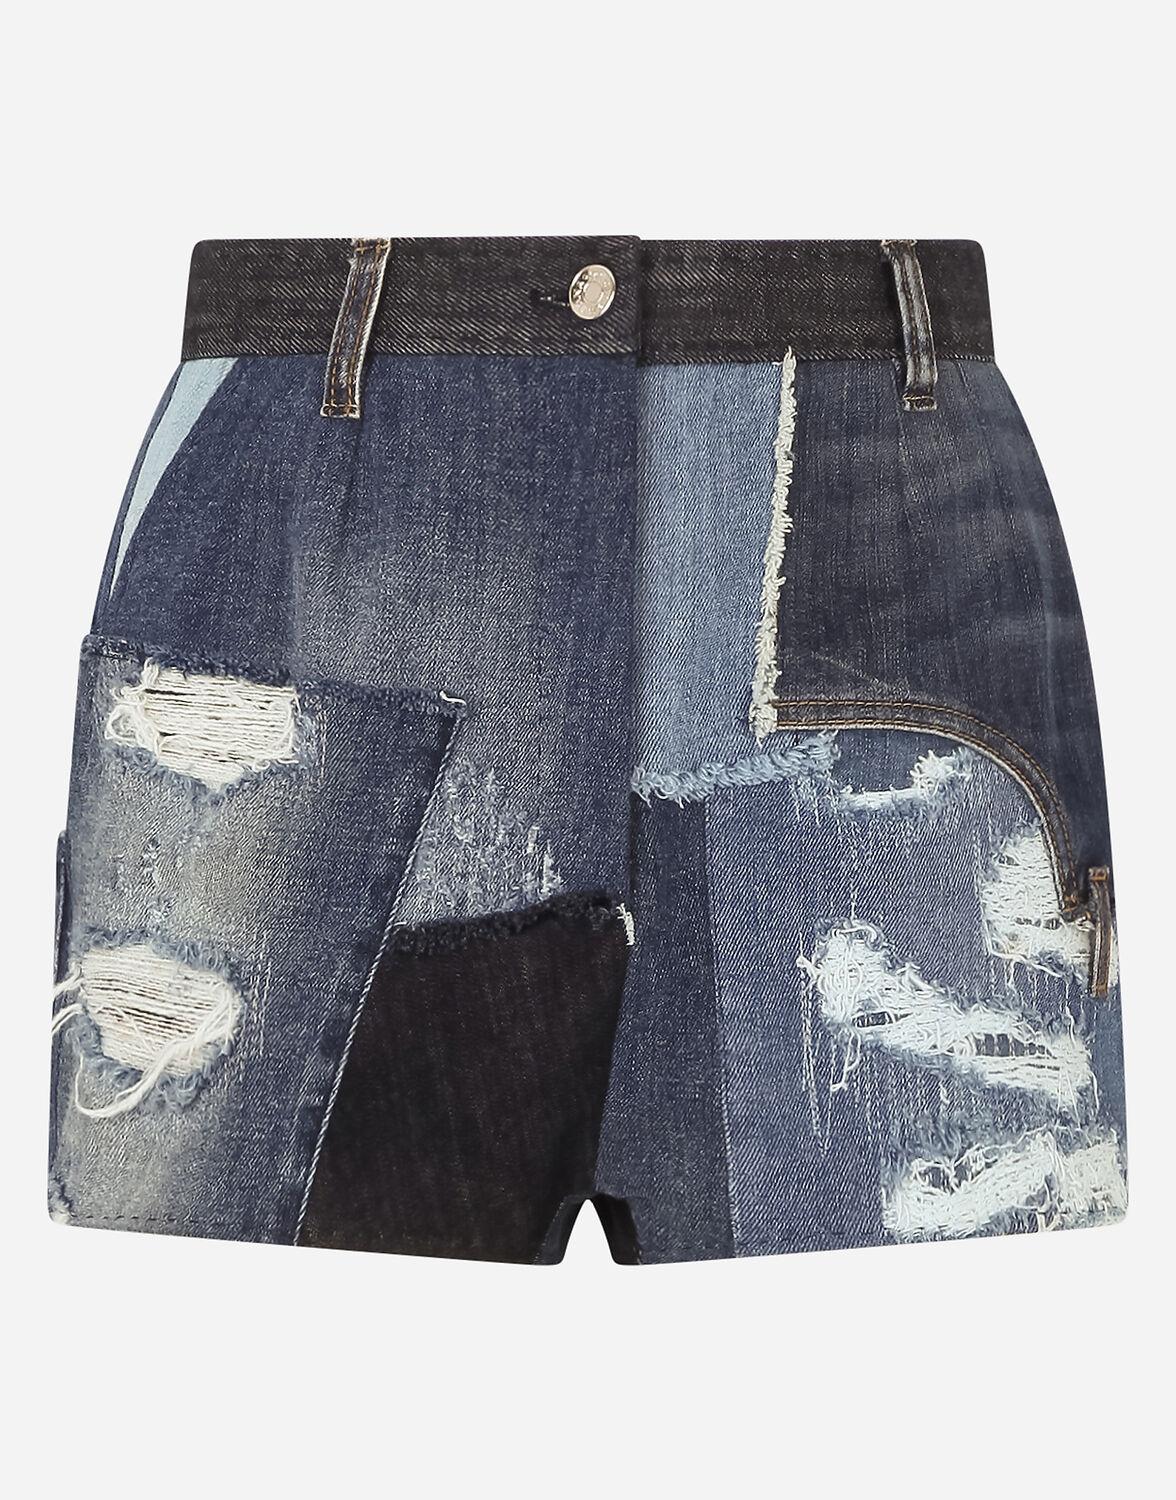 Dolce & Gabbana Patchwork Denim Shorts in Blue - Lyst